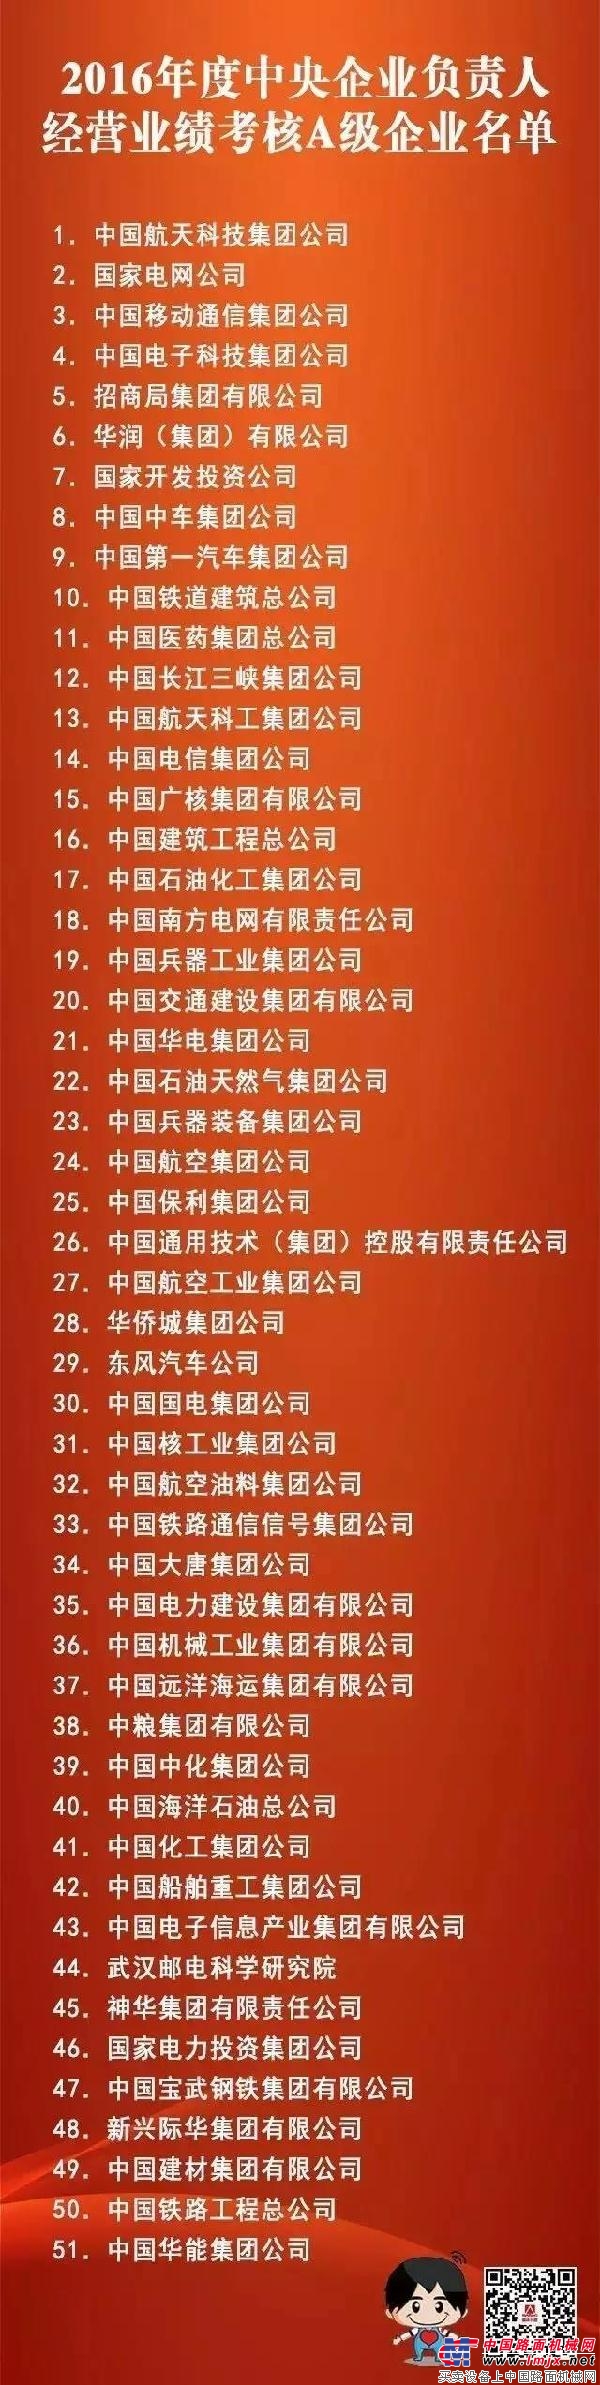 中国建筑第12次获中央企业负责人经营业绩考核A级